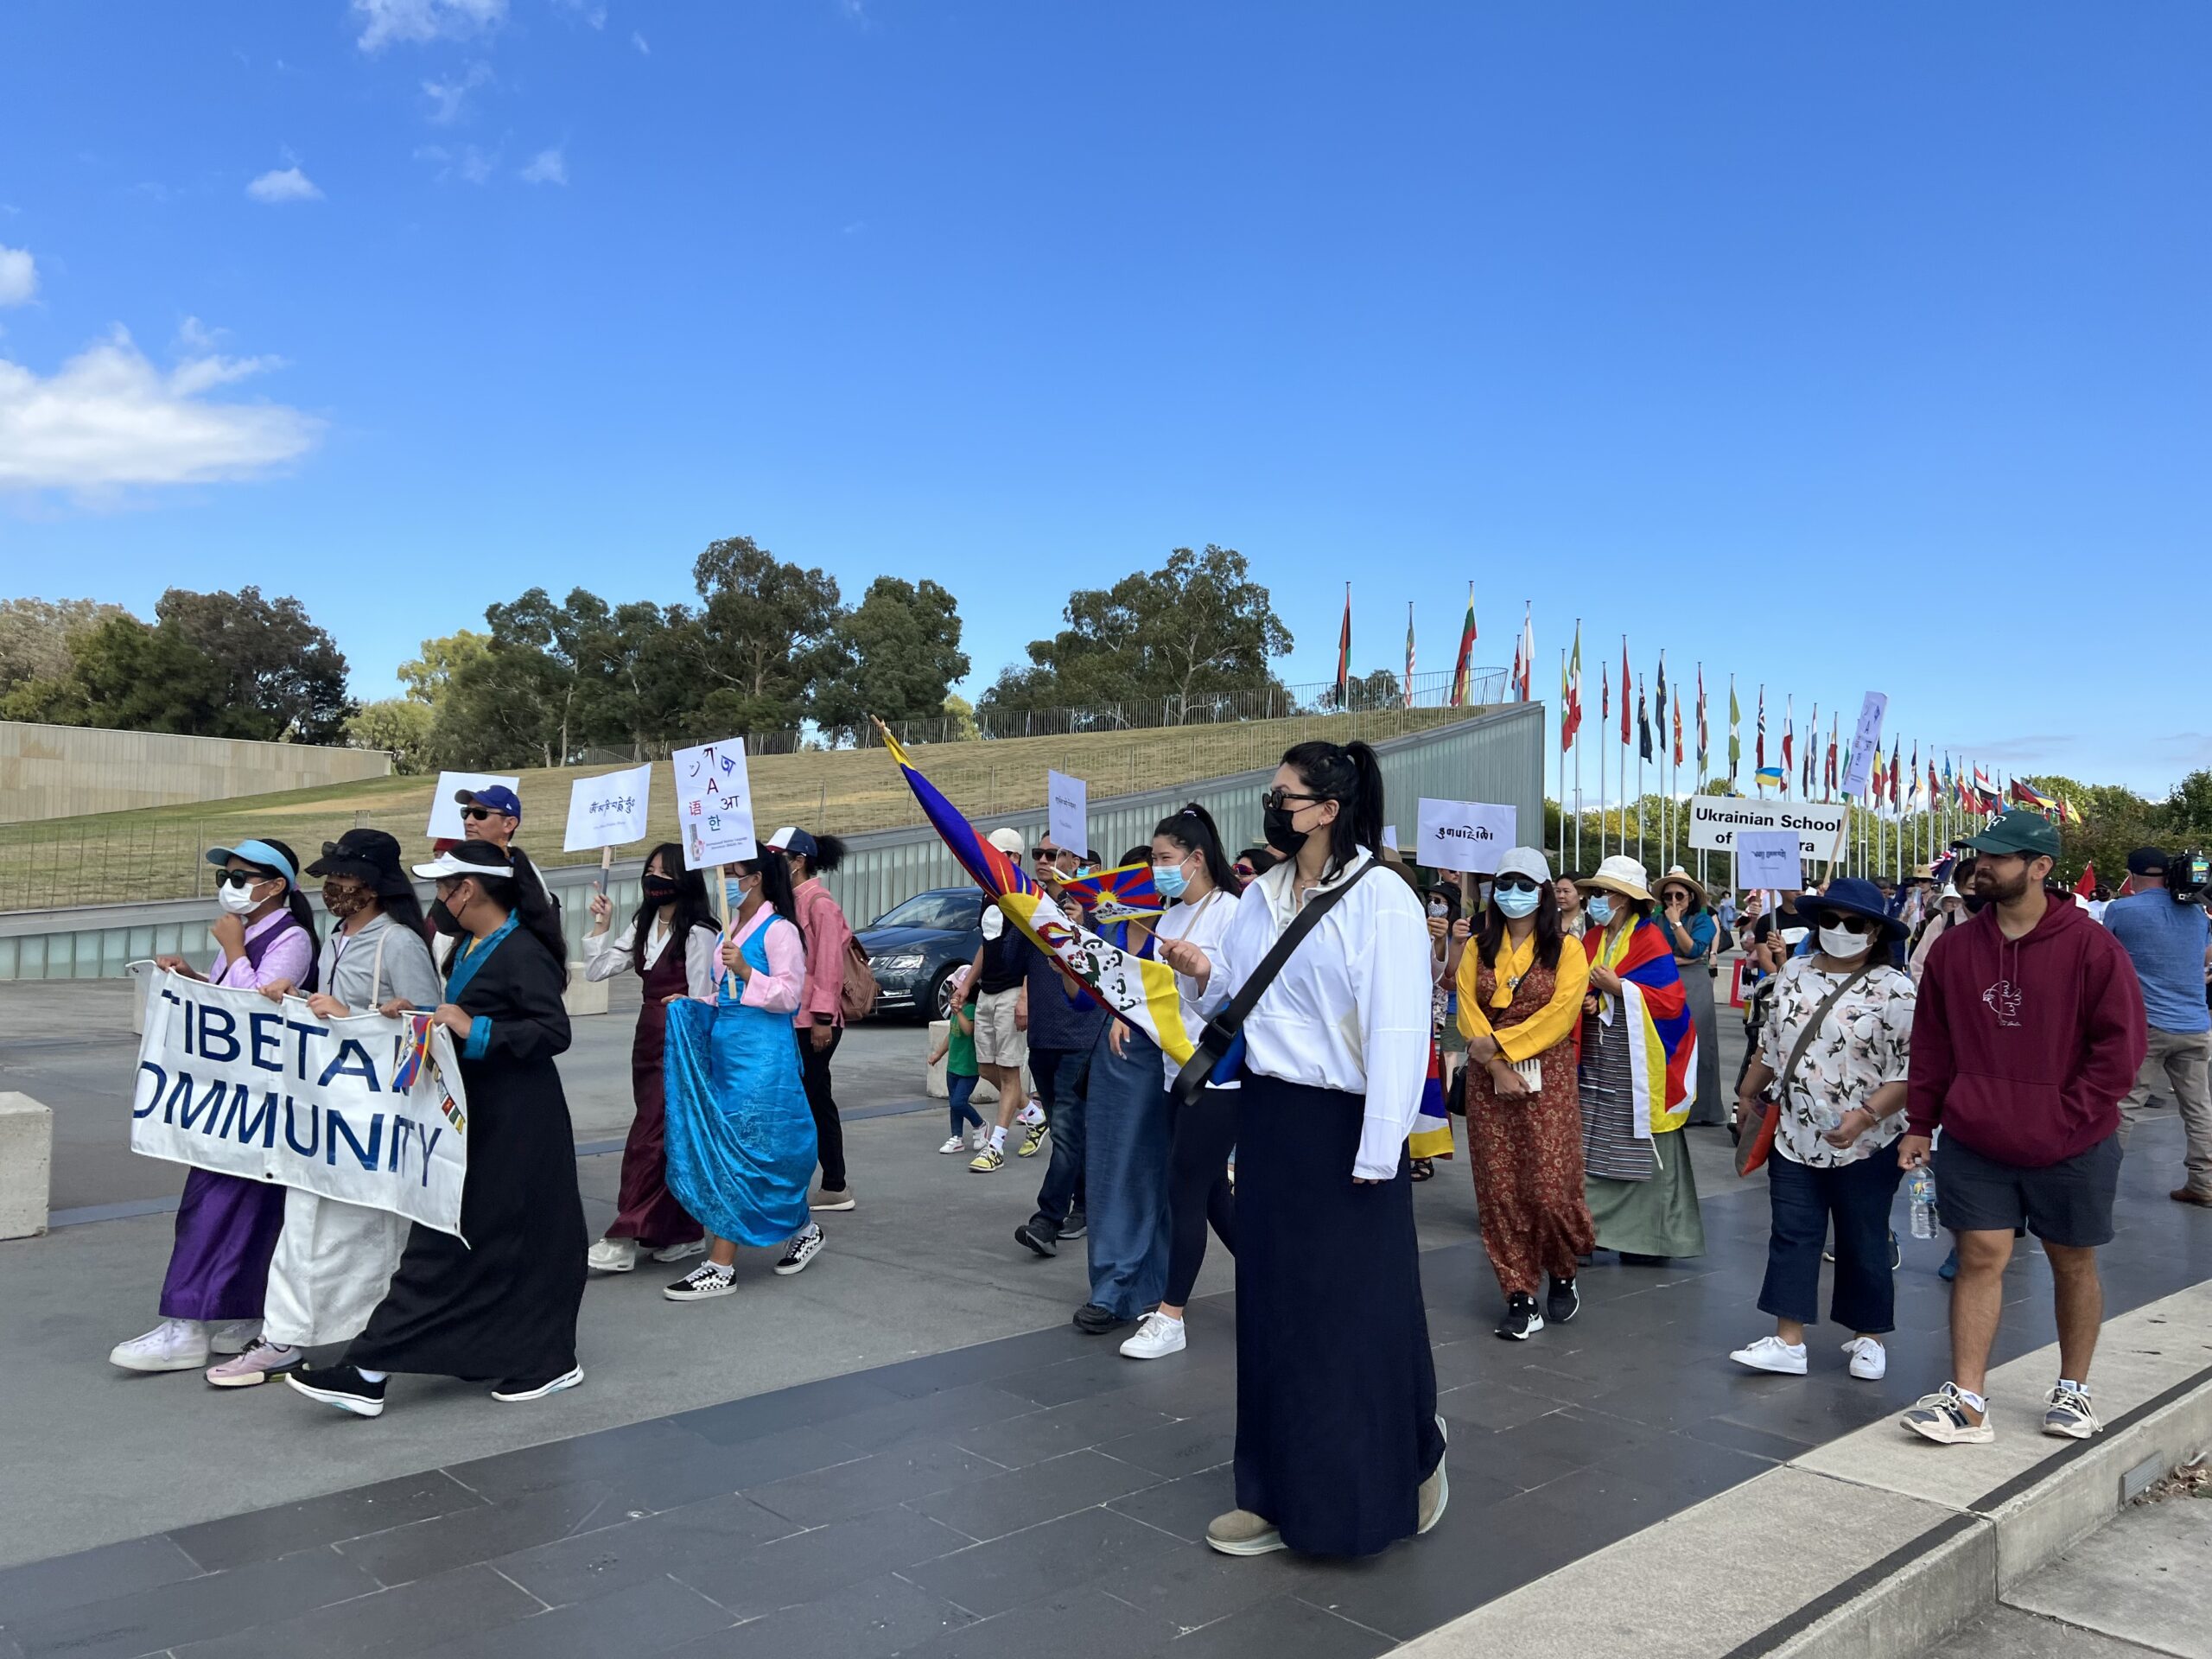 Члени тибетської громади Канберри, які беруть участь у Міжнародному дні рідної мови, проходять у Канберрі. в масштабі 1 Тибетці Канберри представляють свою мову на Міжнародному дні рідної мови в Австралії